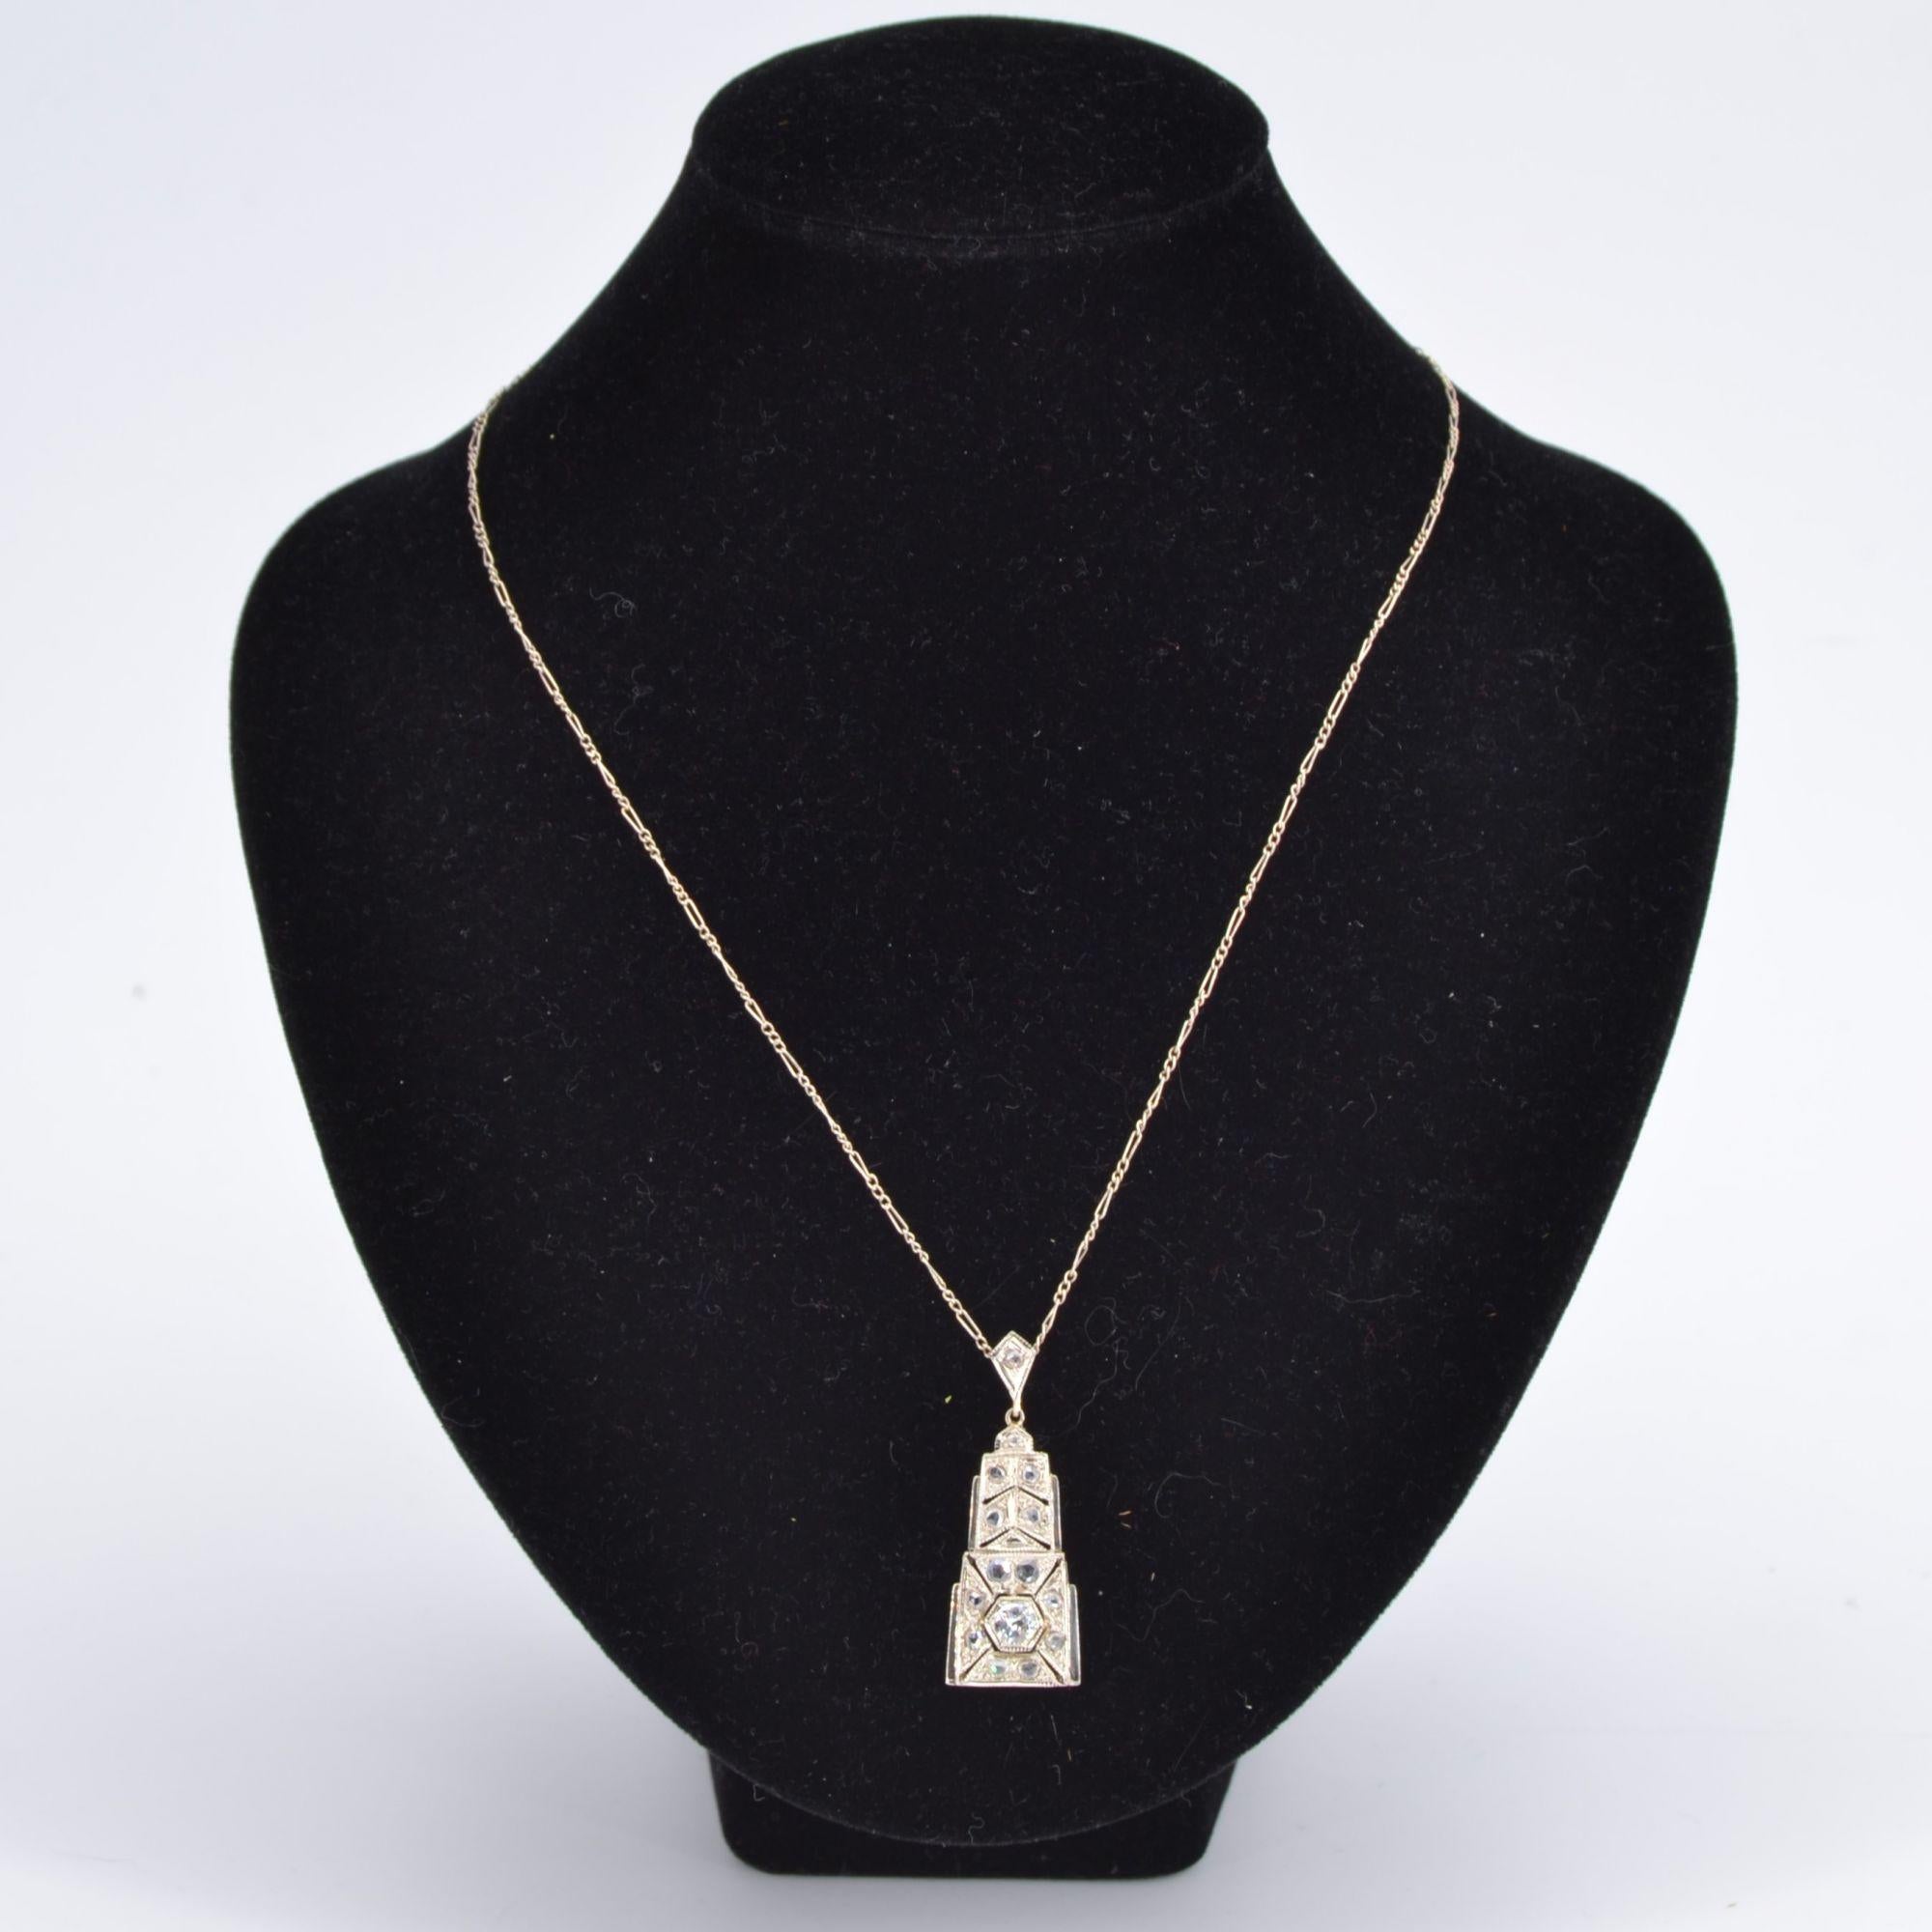 Brilliant Cut French Art Deco Diamonds 18 Karat White Gold Pendant Necklace For Sale